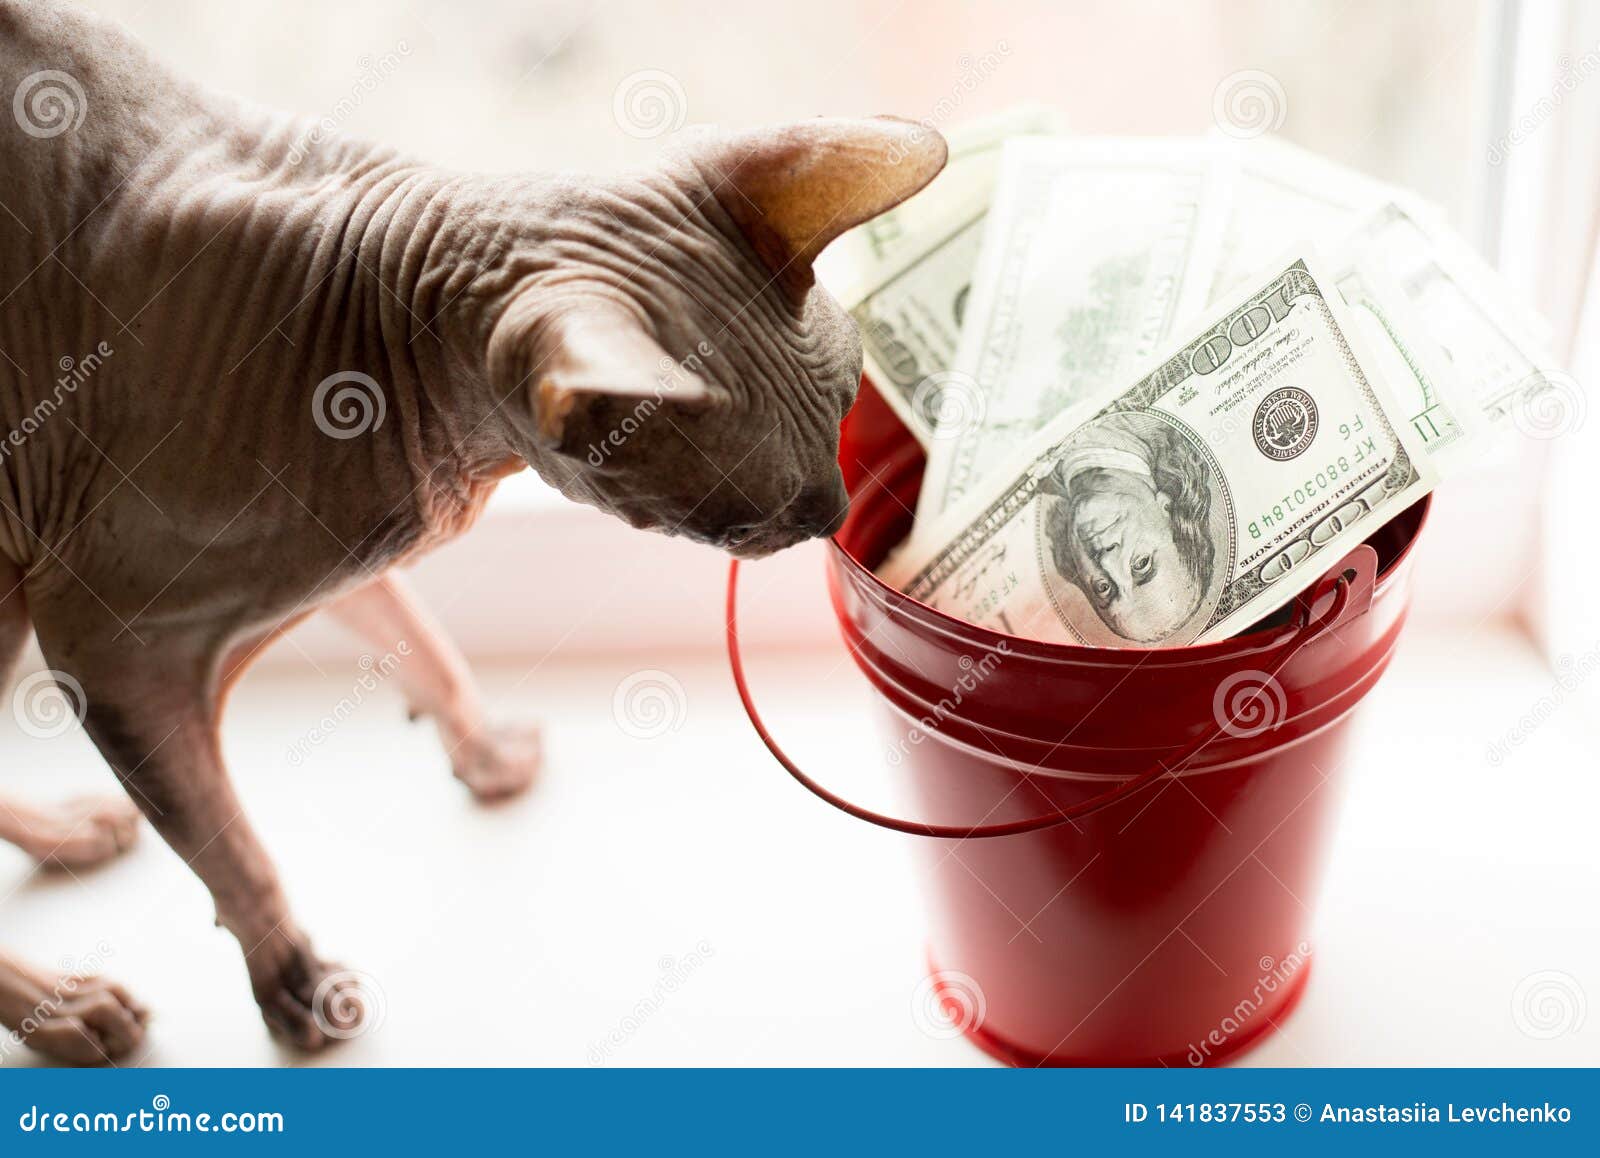 Notas de dólar no balde vermelho e no gato cinzento na janela branca Fundo claro Vista superior muito dinheiro com sphynx